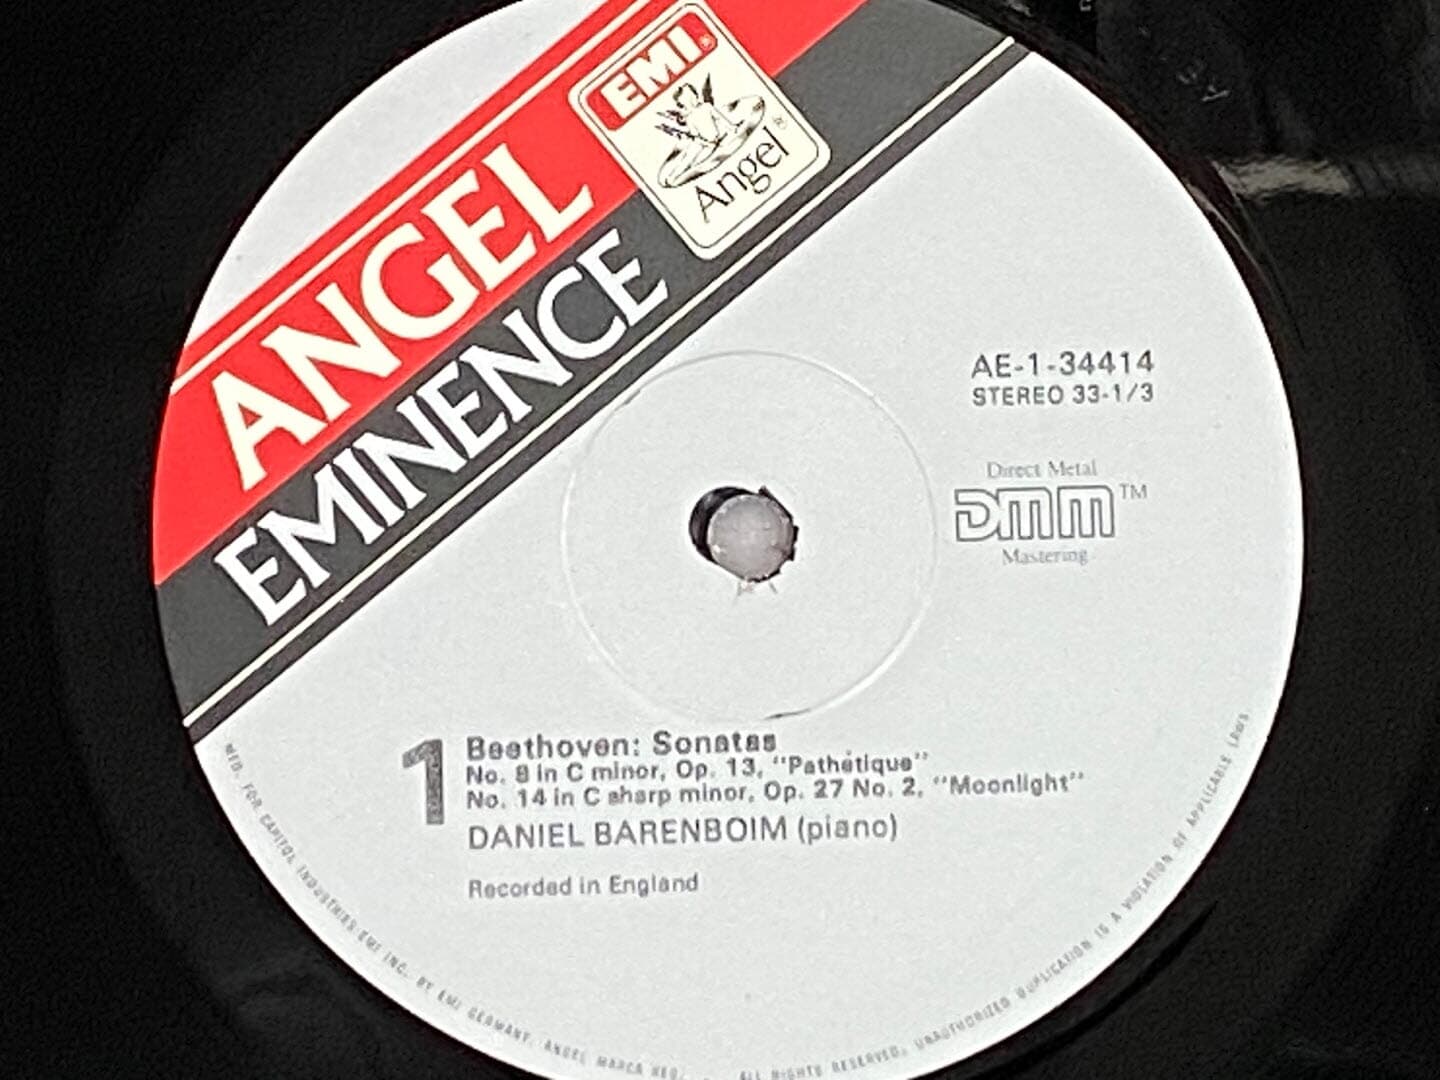 [LP] 다니엘 바렌보임 - Daniel Barenboim - Beethoven Piano Sonatas Appassionata,Moonlight LP [U.S반]